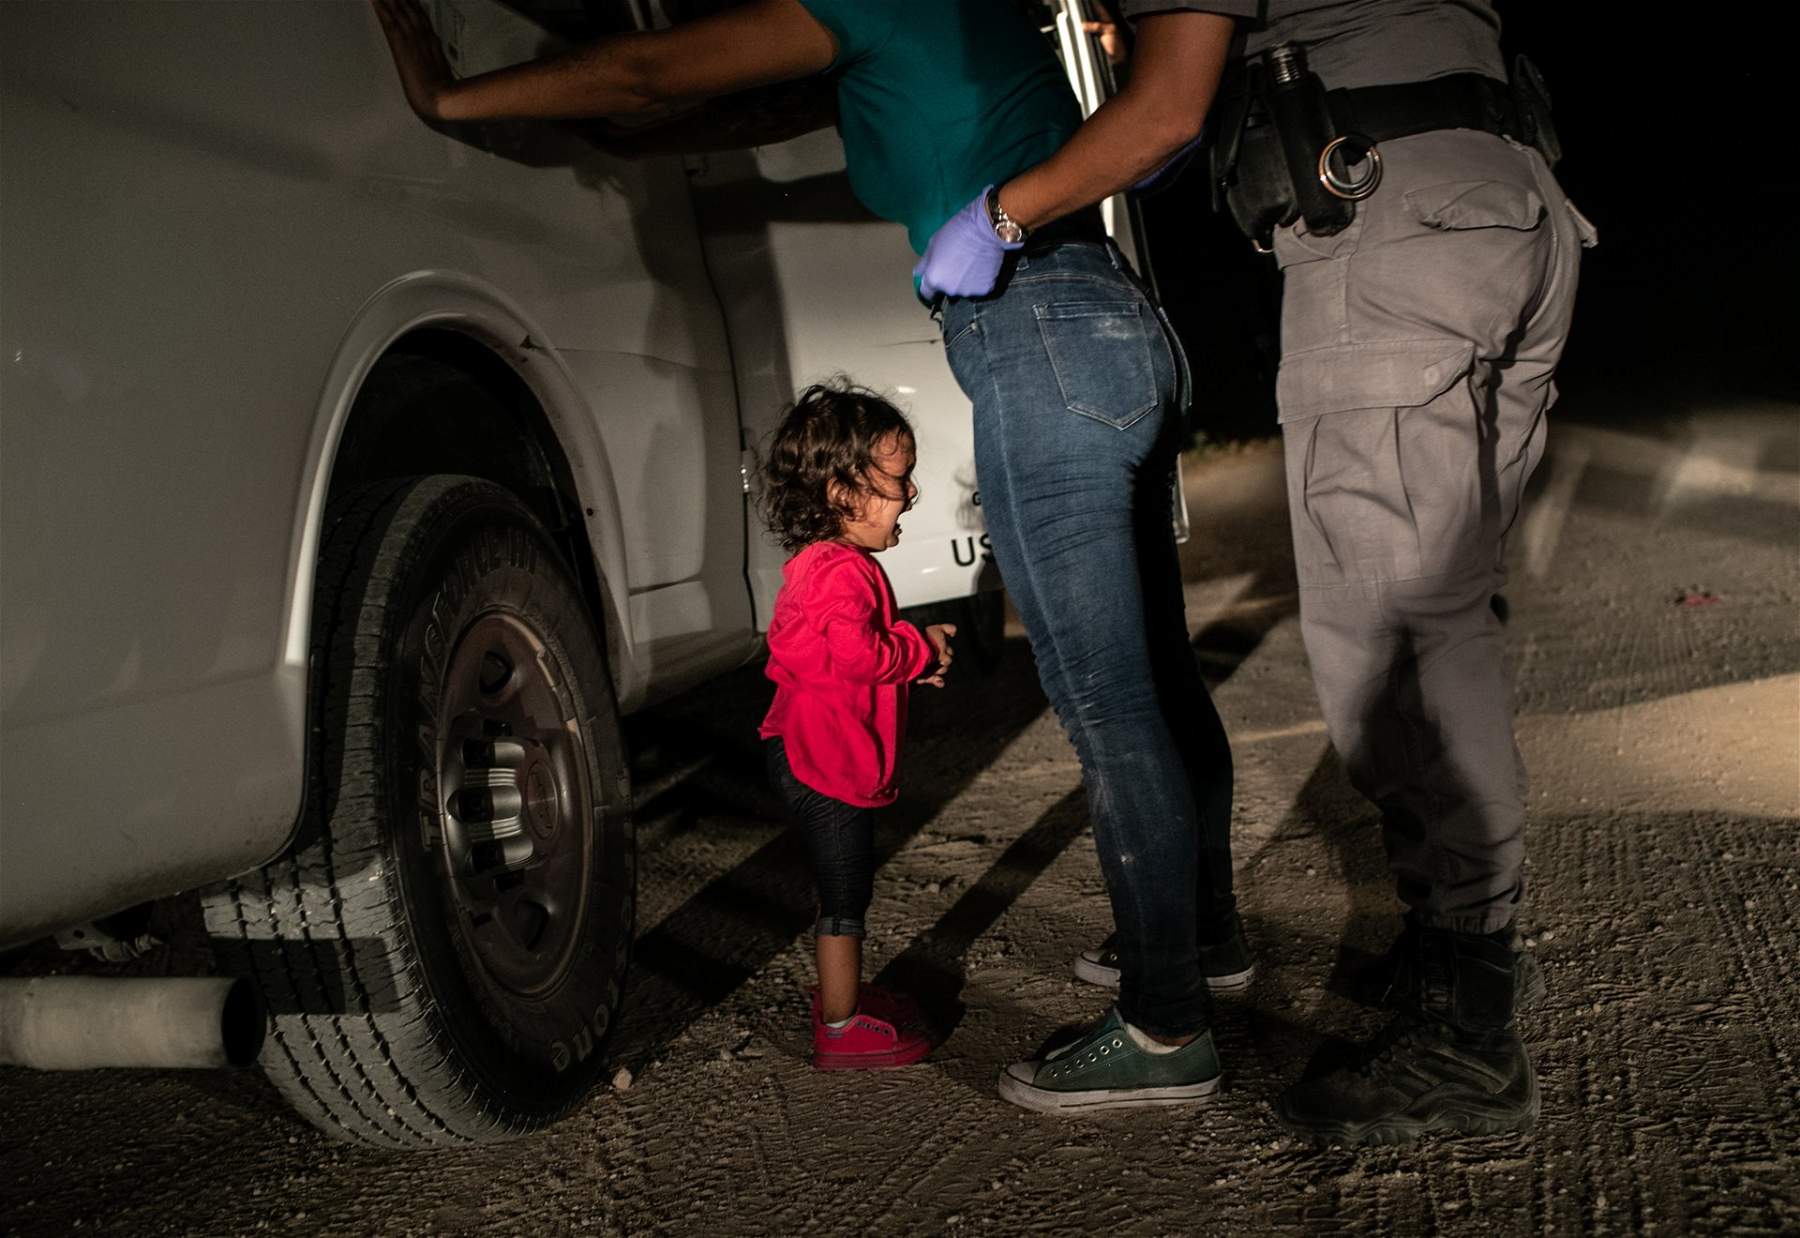 World Press, la photo de l'année est celle de la petite fille pleurant à la frontière entre les États-Unis et le Mexique, par John Moore. L'Italie brille